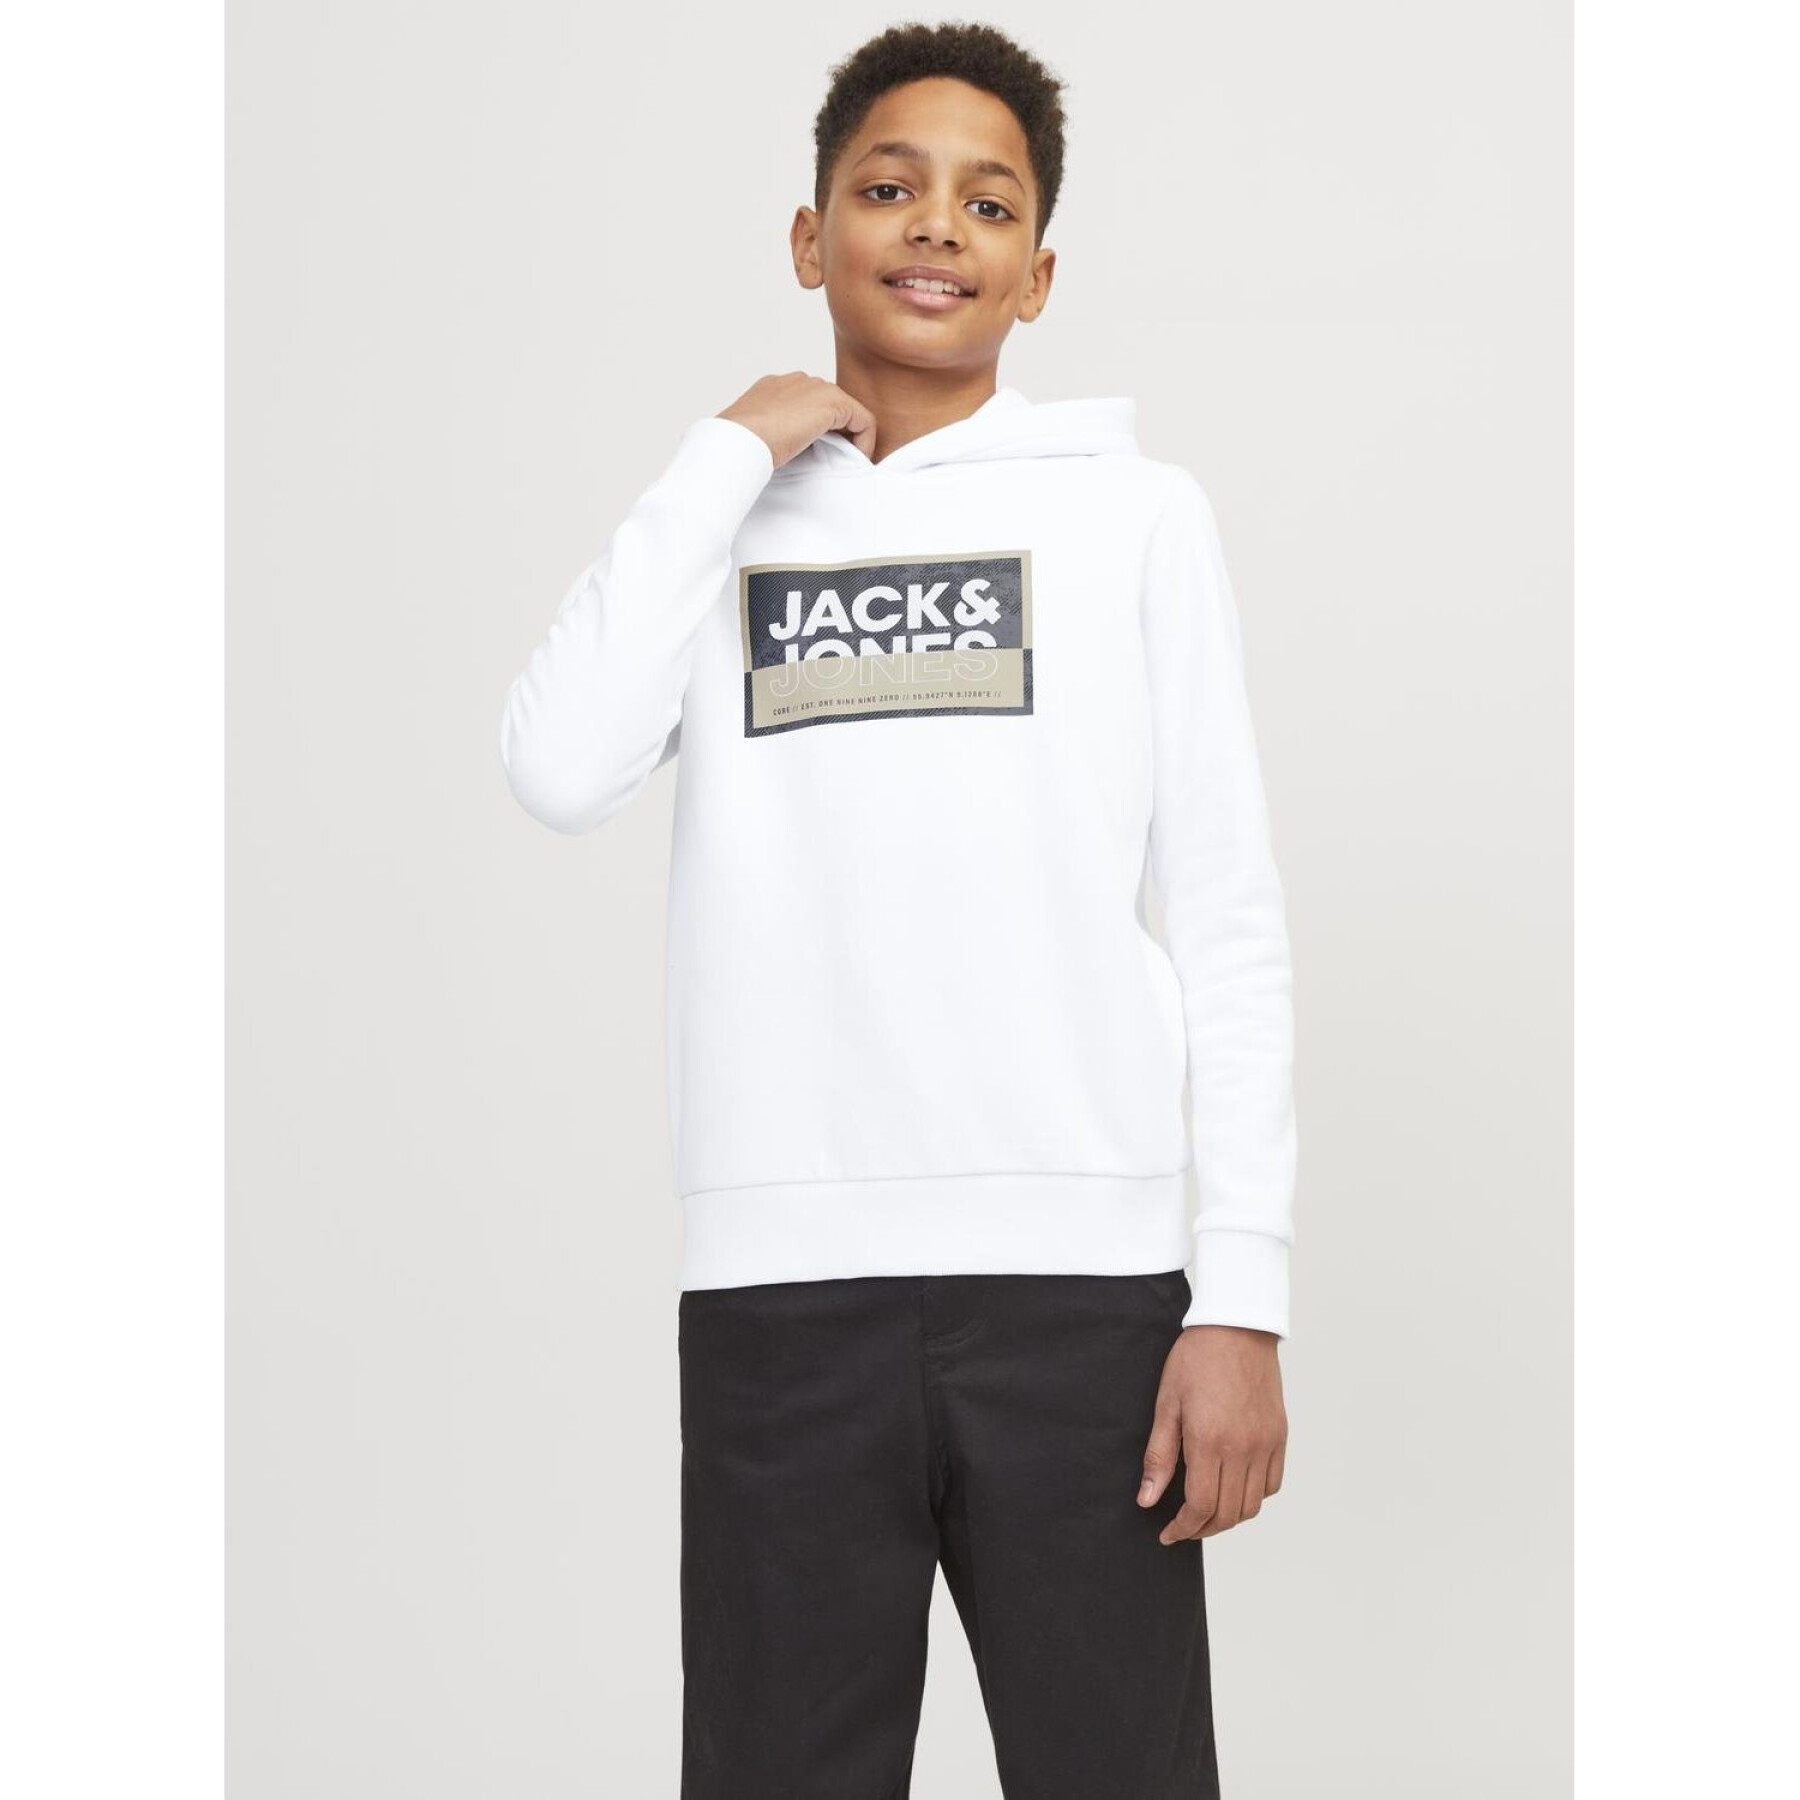 Printed hooded sweatshirt for kids Jack & Jones Logan